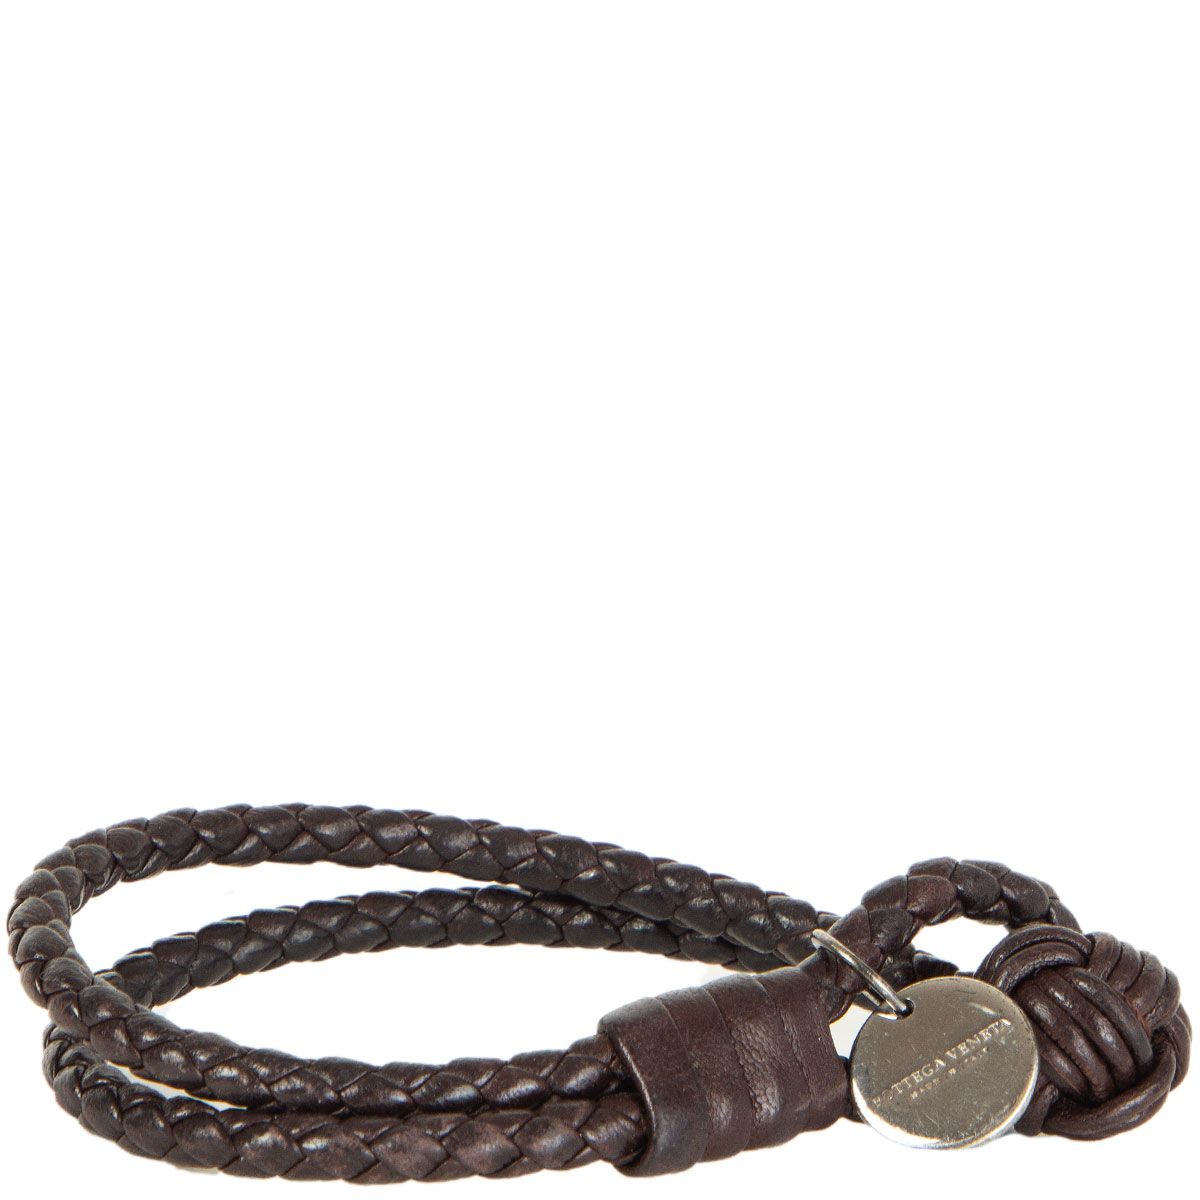 Bottega Veneta® Men's Braid Leather Bracelet in Parakeet. Shop online now.